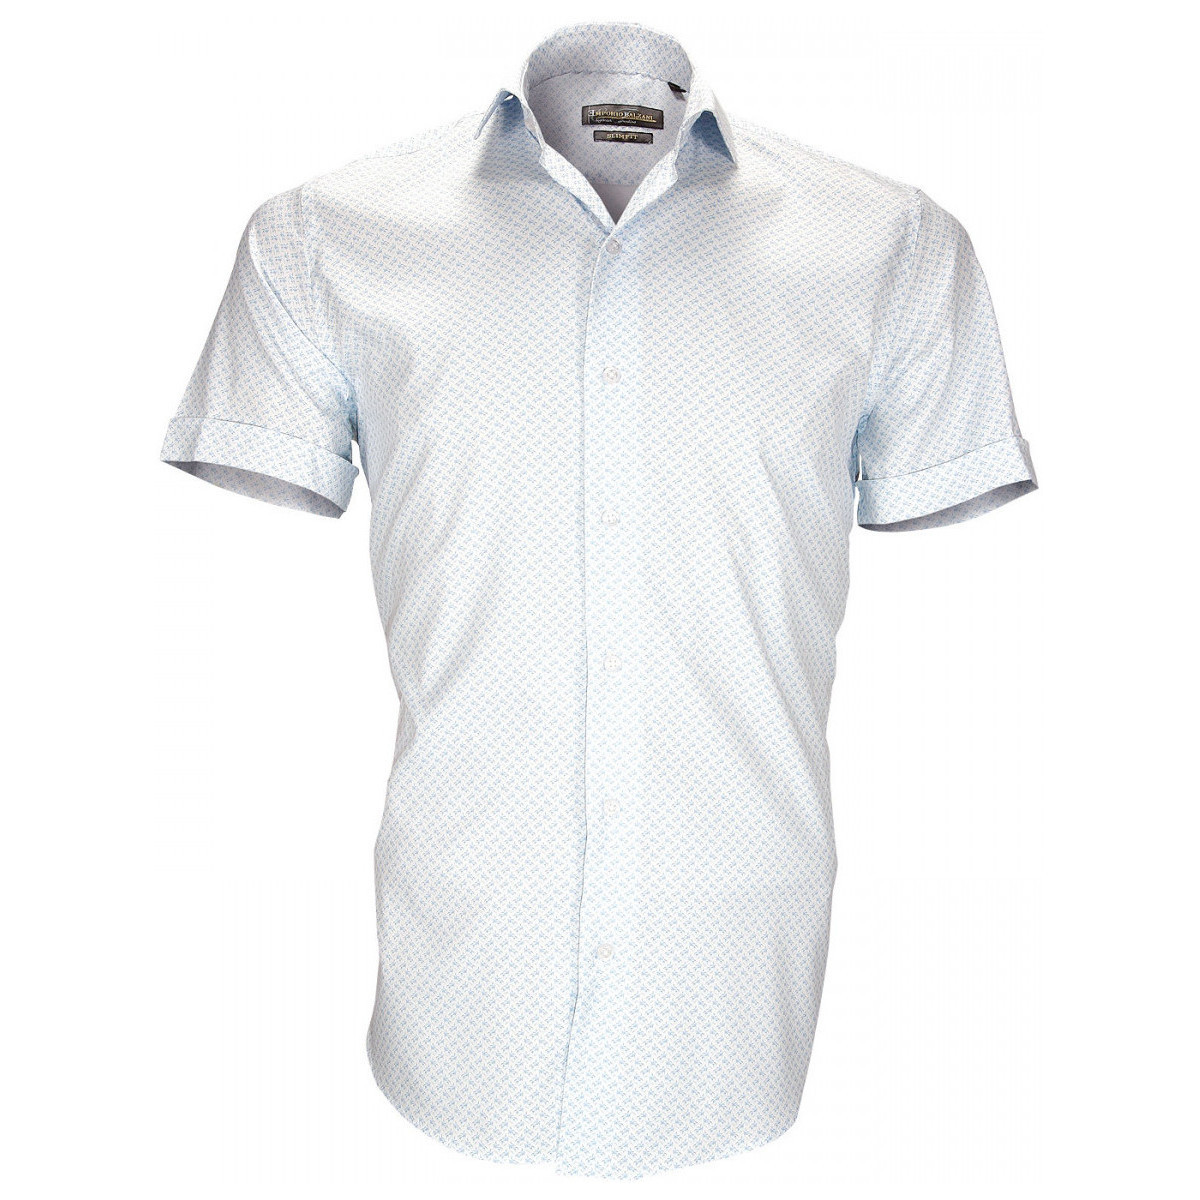 Vêtements Homme Chemises manches courtes Emporio Balzani chemise stretch albinoni bleu Bleu